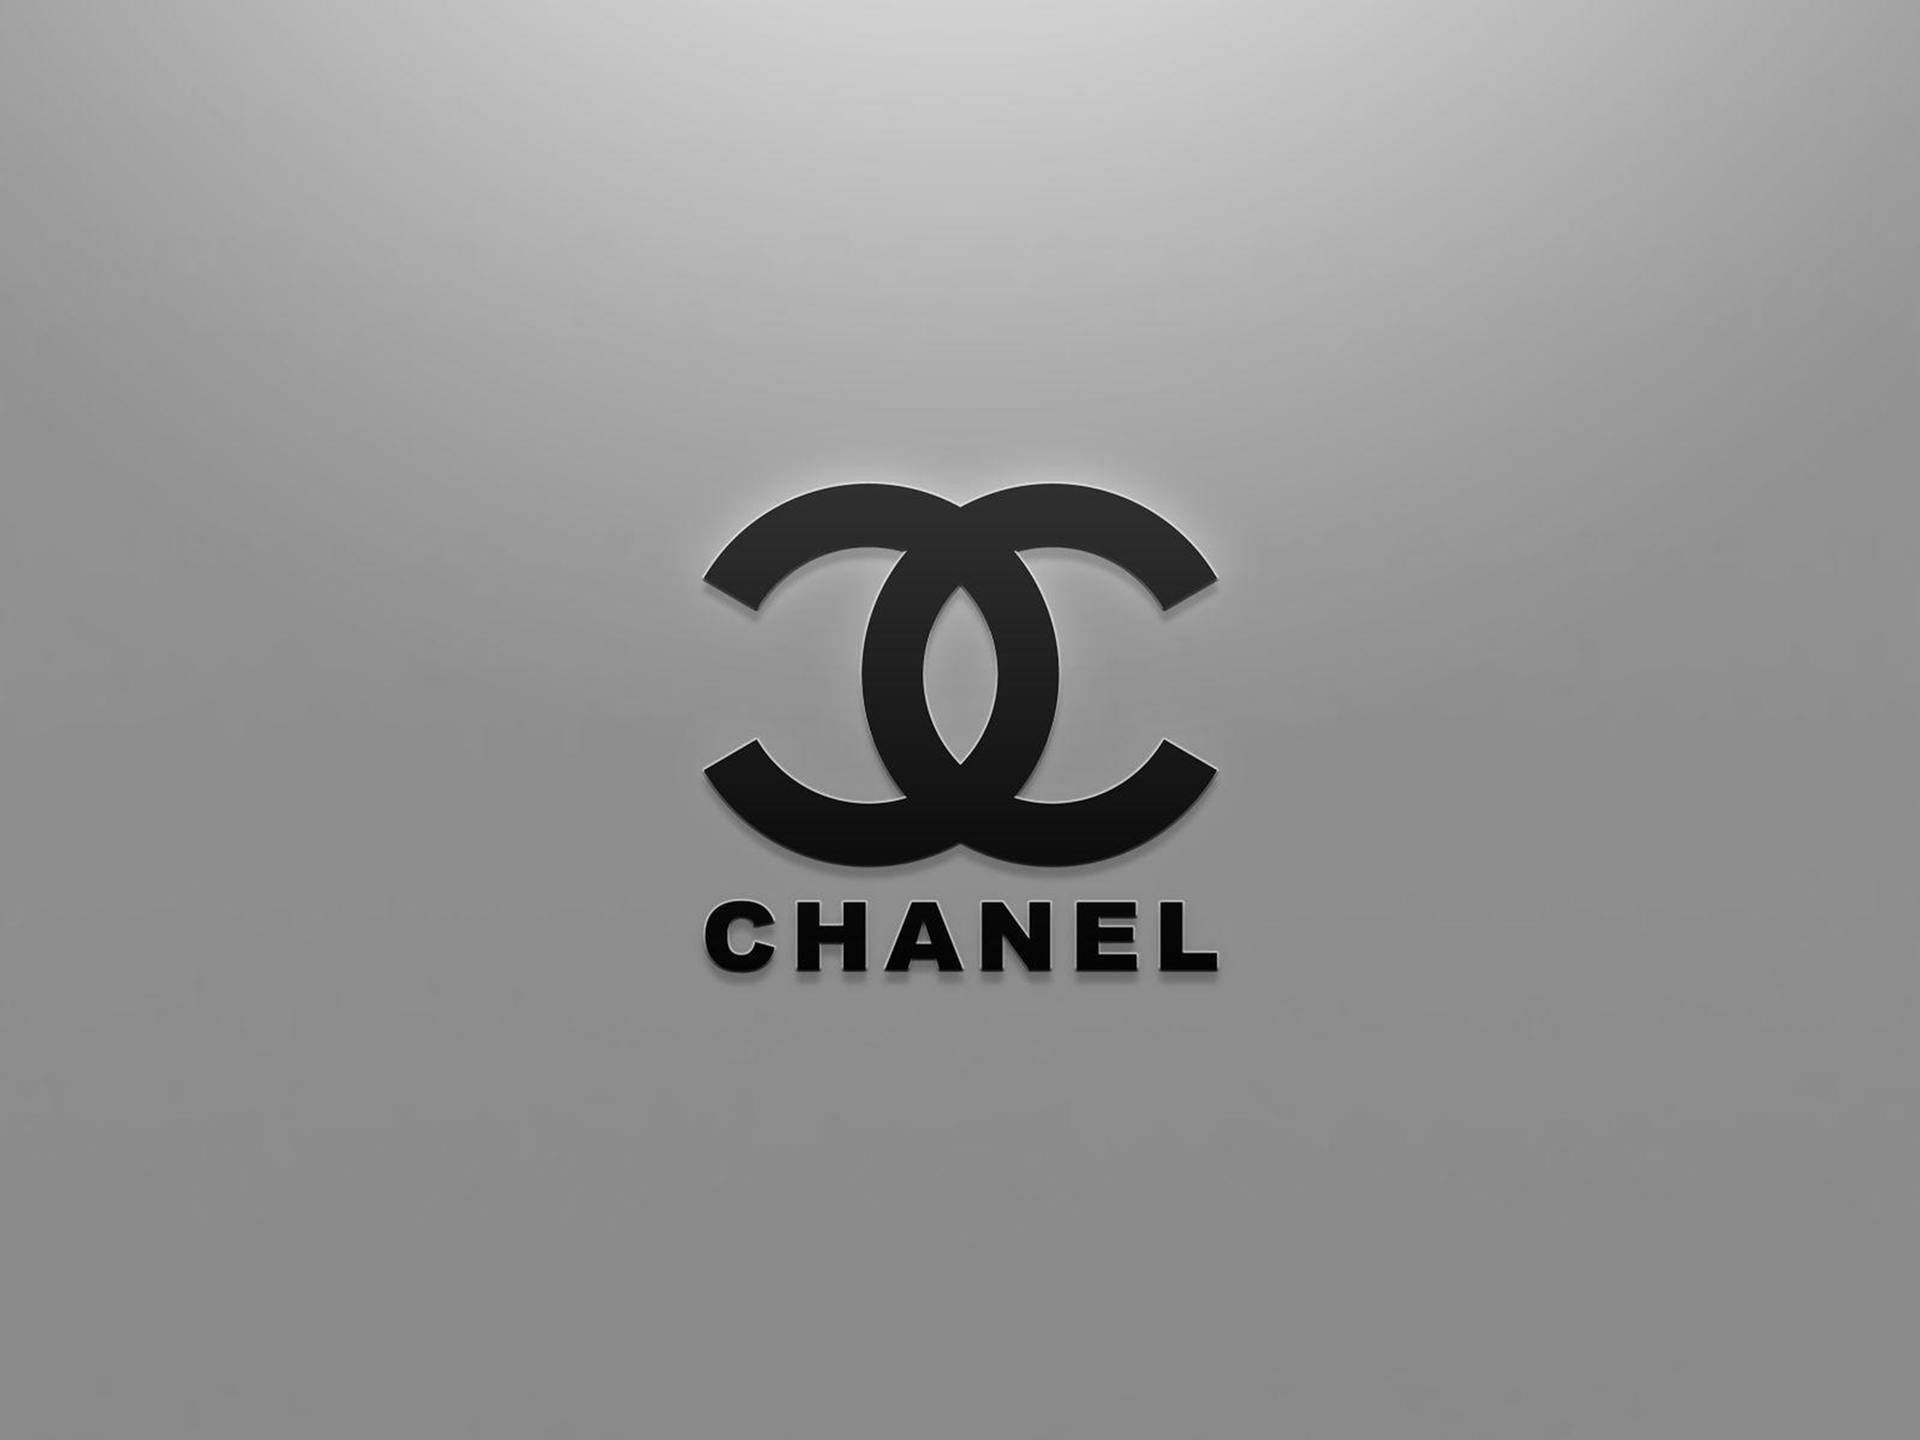 [100+] Fondos de fotos de Logo de Chanel | Wallpapers.com